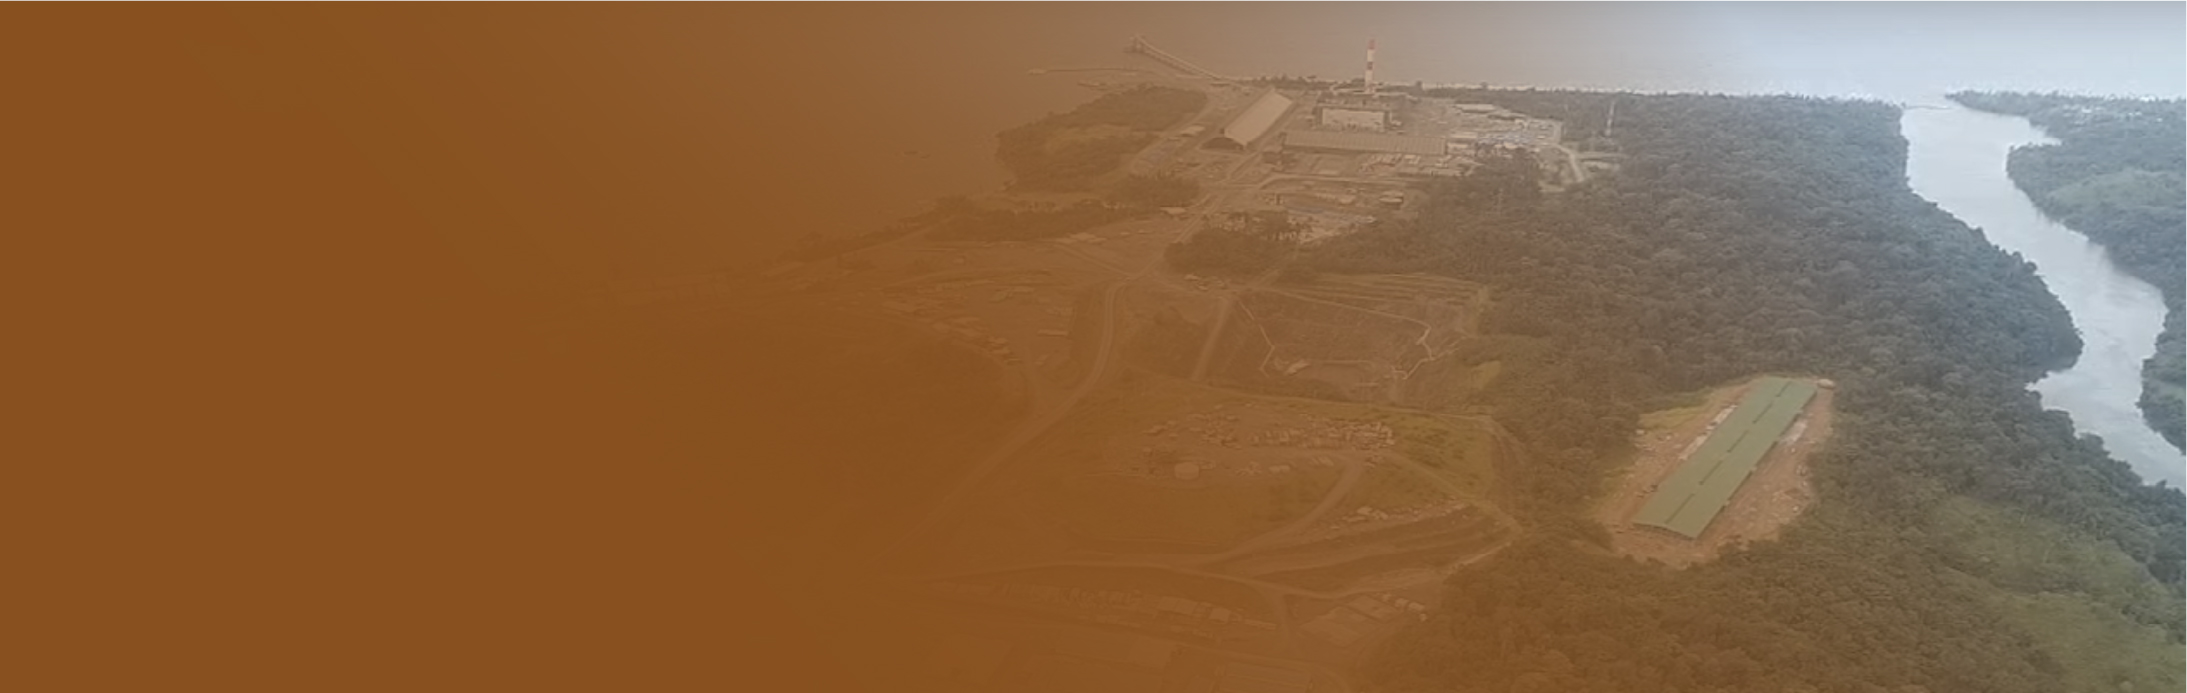 ¿Qué se espera para la economía de Panamá en 2024 sin la actividad en su mina de cobre?